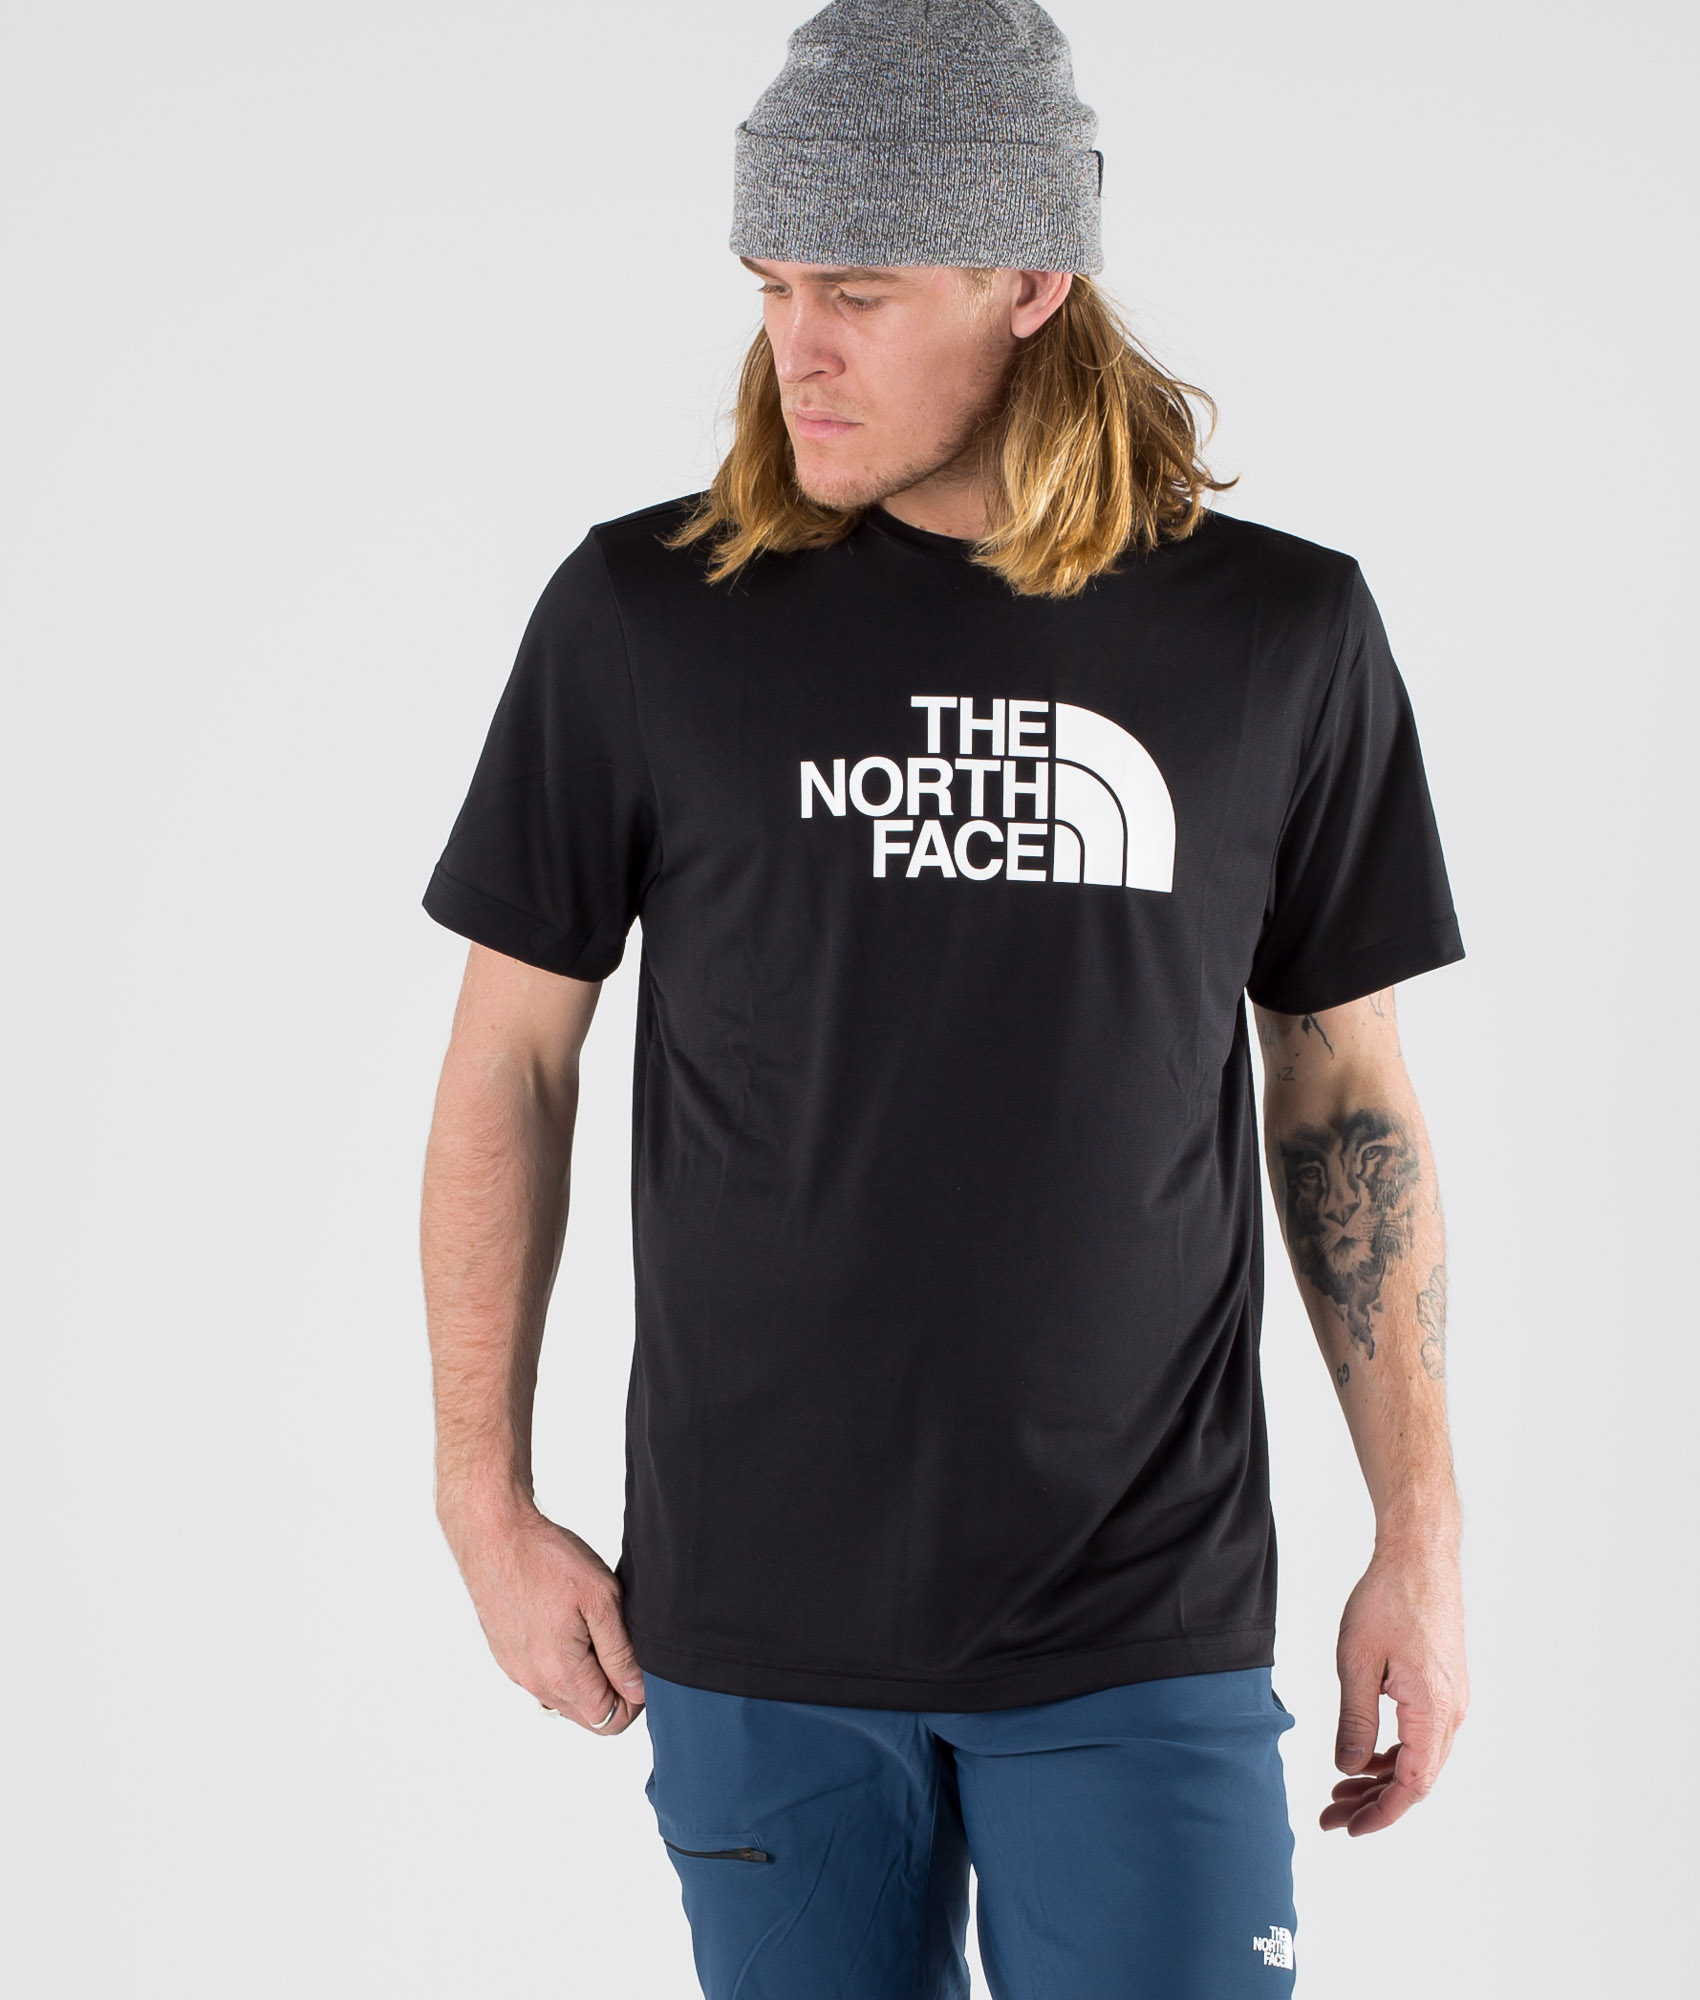 north face tanken t shirt Online 